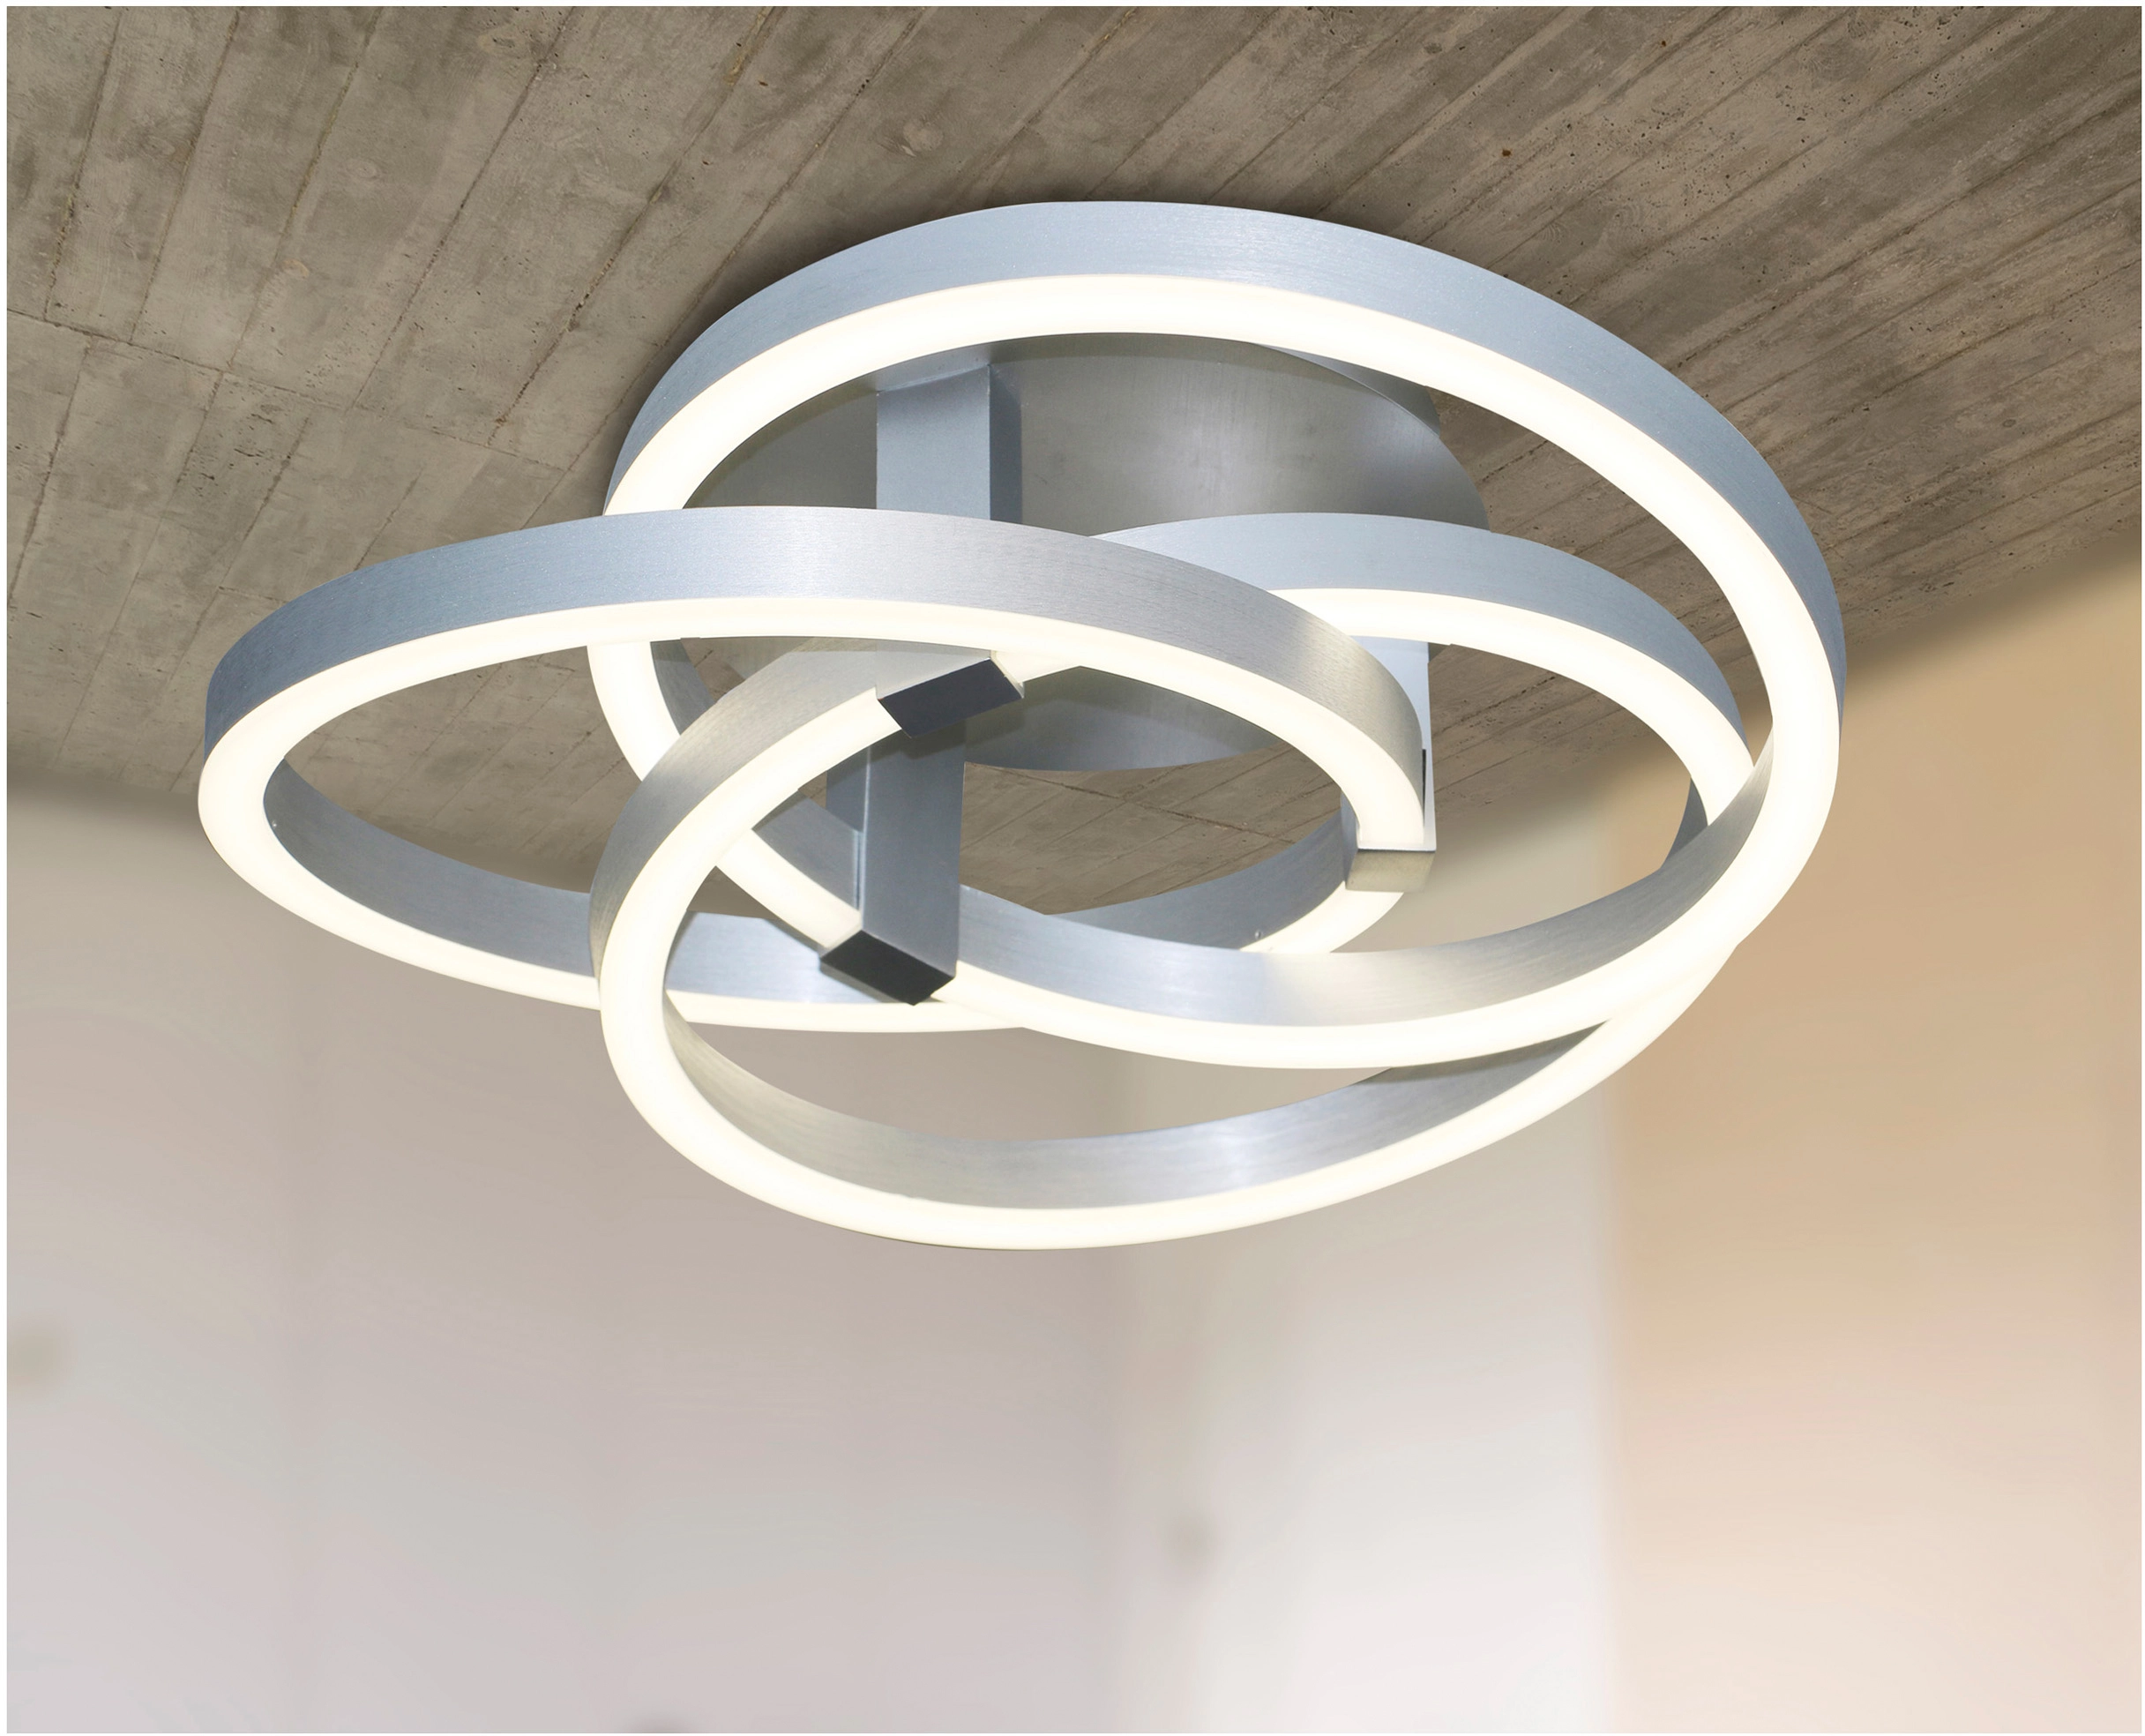 cm Näve Divora Smart OBI Home kaufen bei LED-Deckenleuchte 58